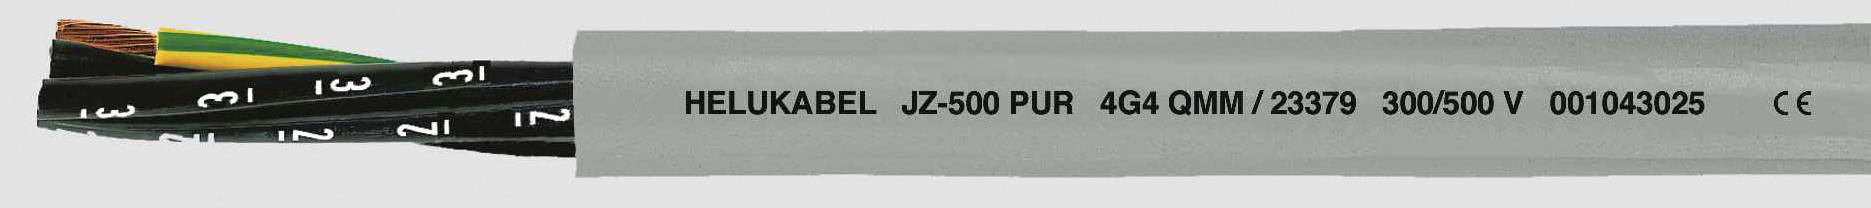 HELUKABEL JZ-500 PUR Steuerleitung 5 G 0.50 mm² Grau 23319 100 m